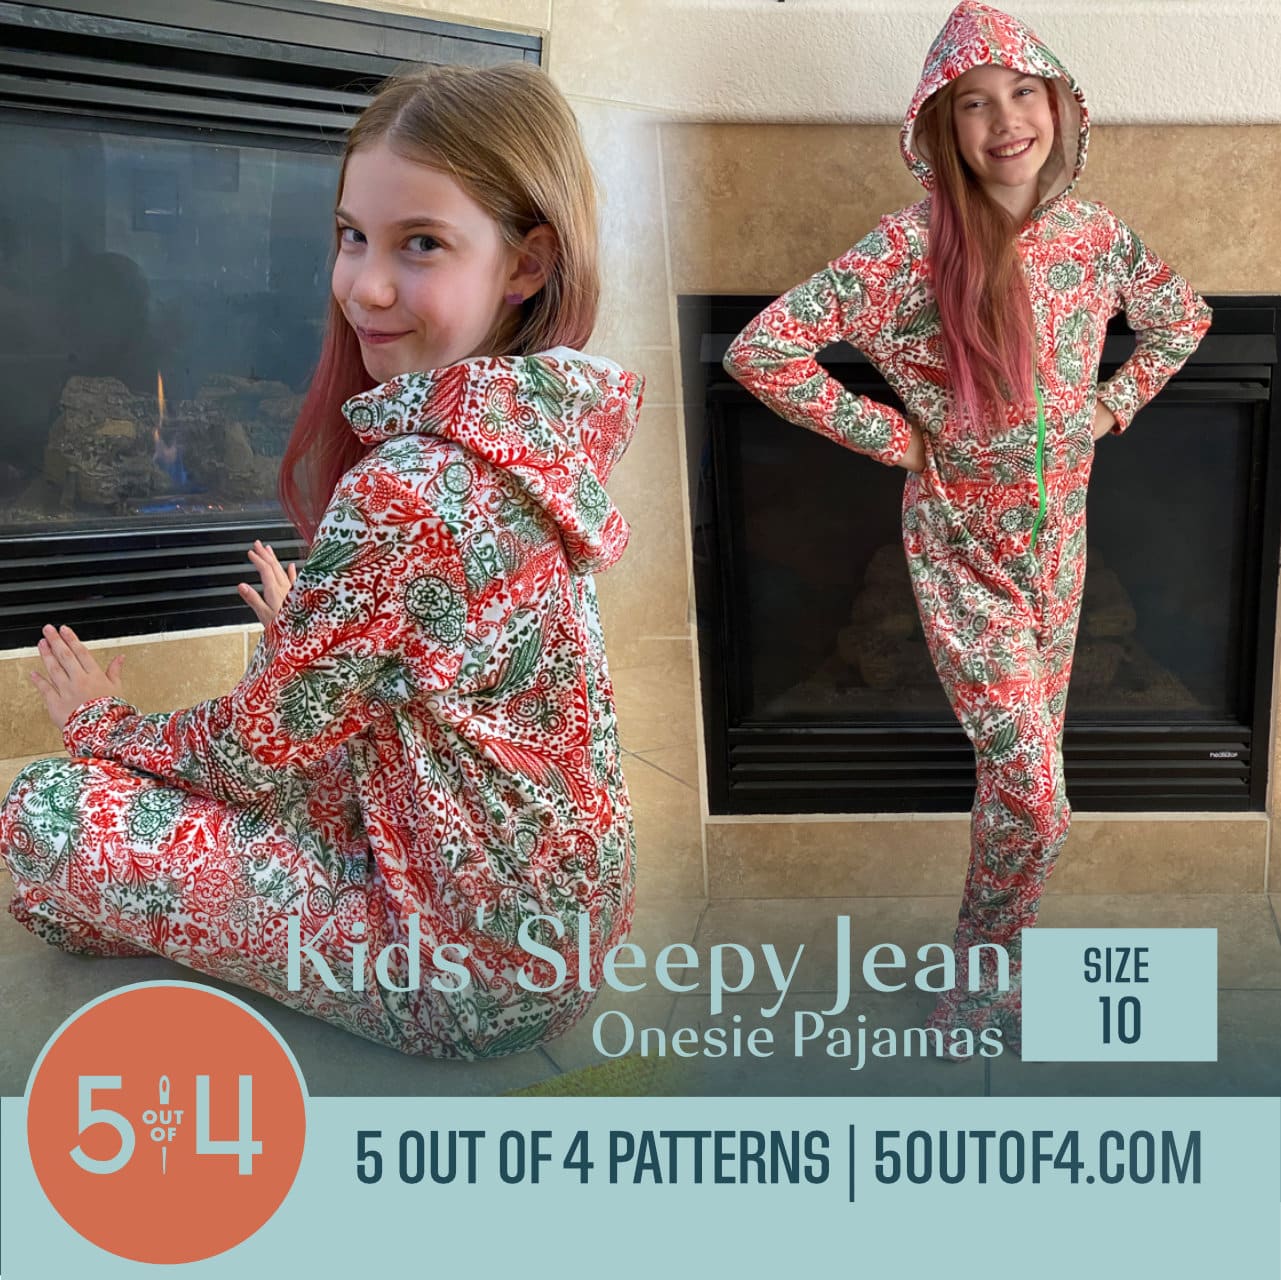 Sleepy Jean Onesie Pajamas - 5 out of 4 Patterns